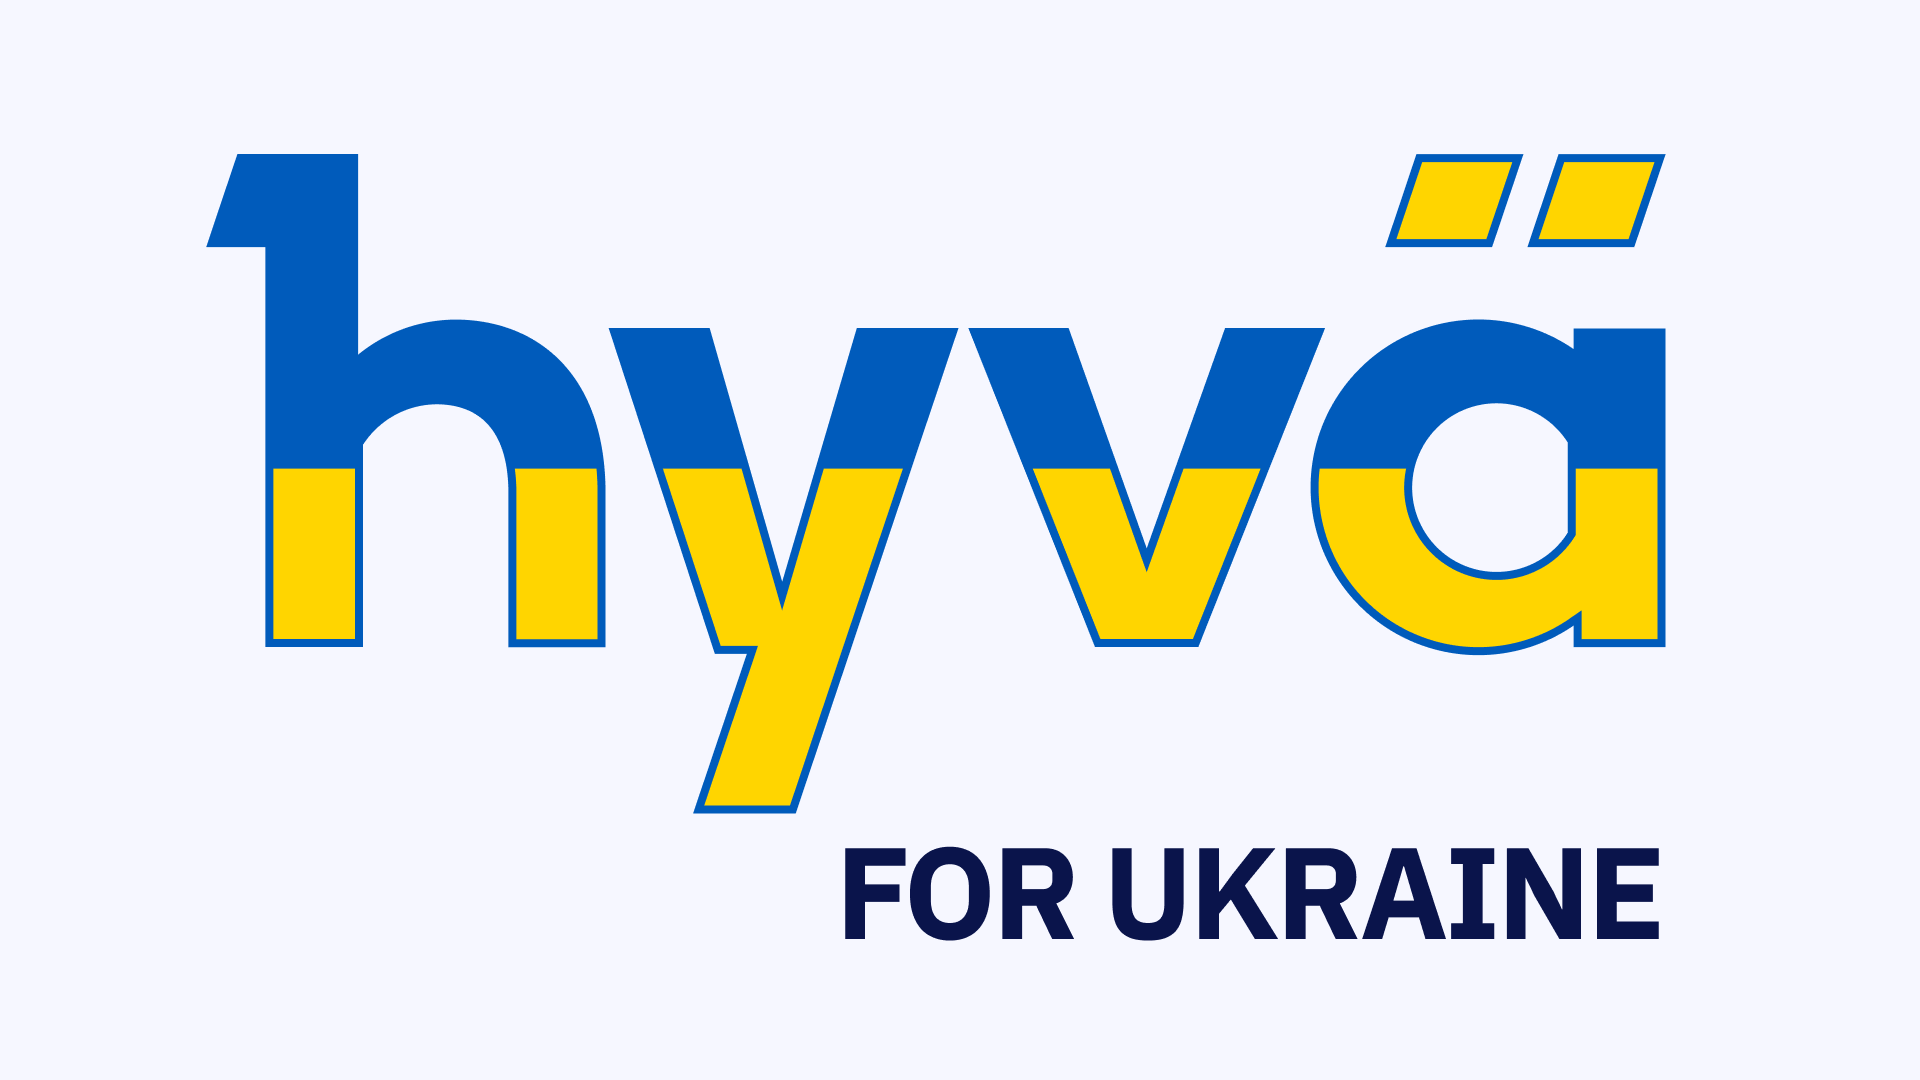 Hyvä for Ukraine